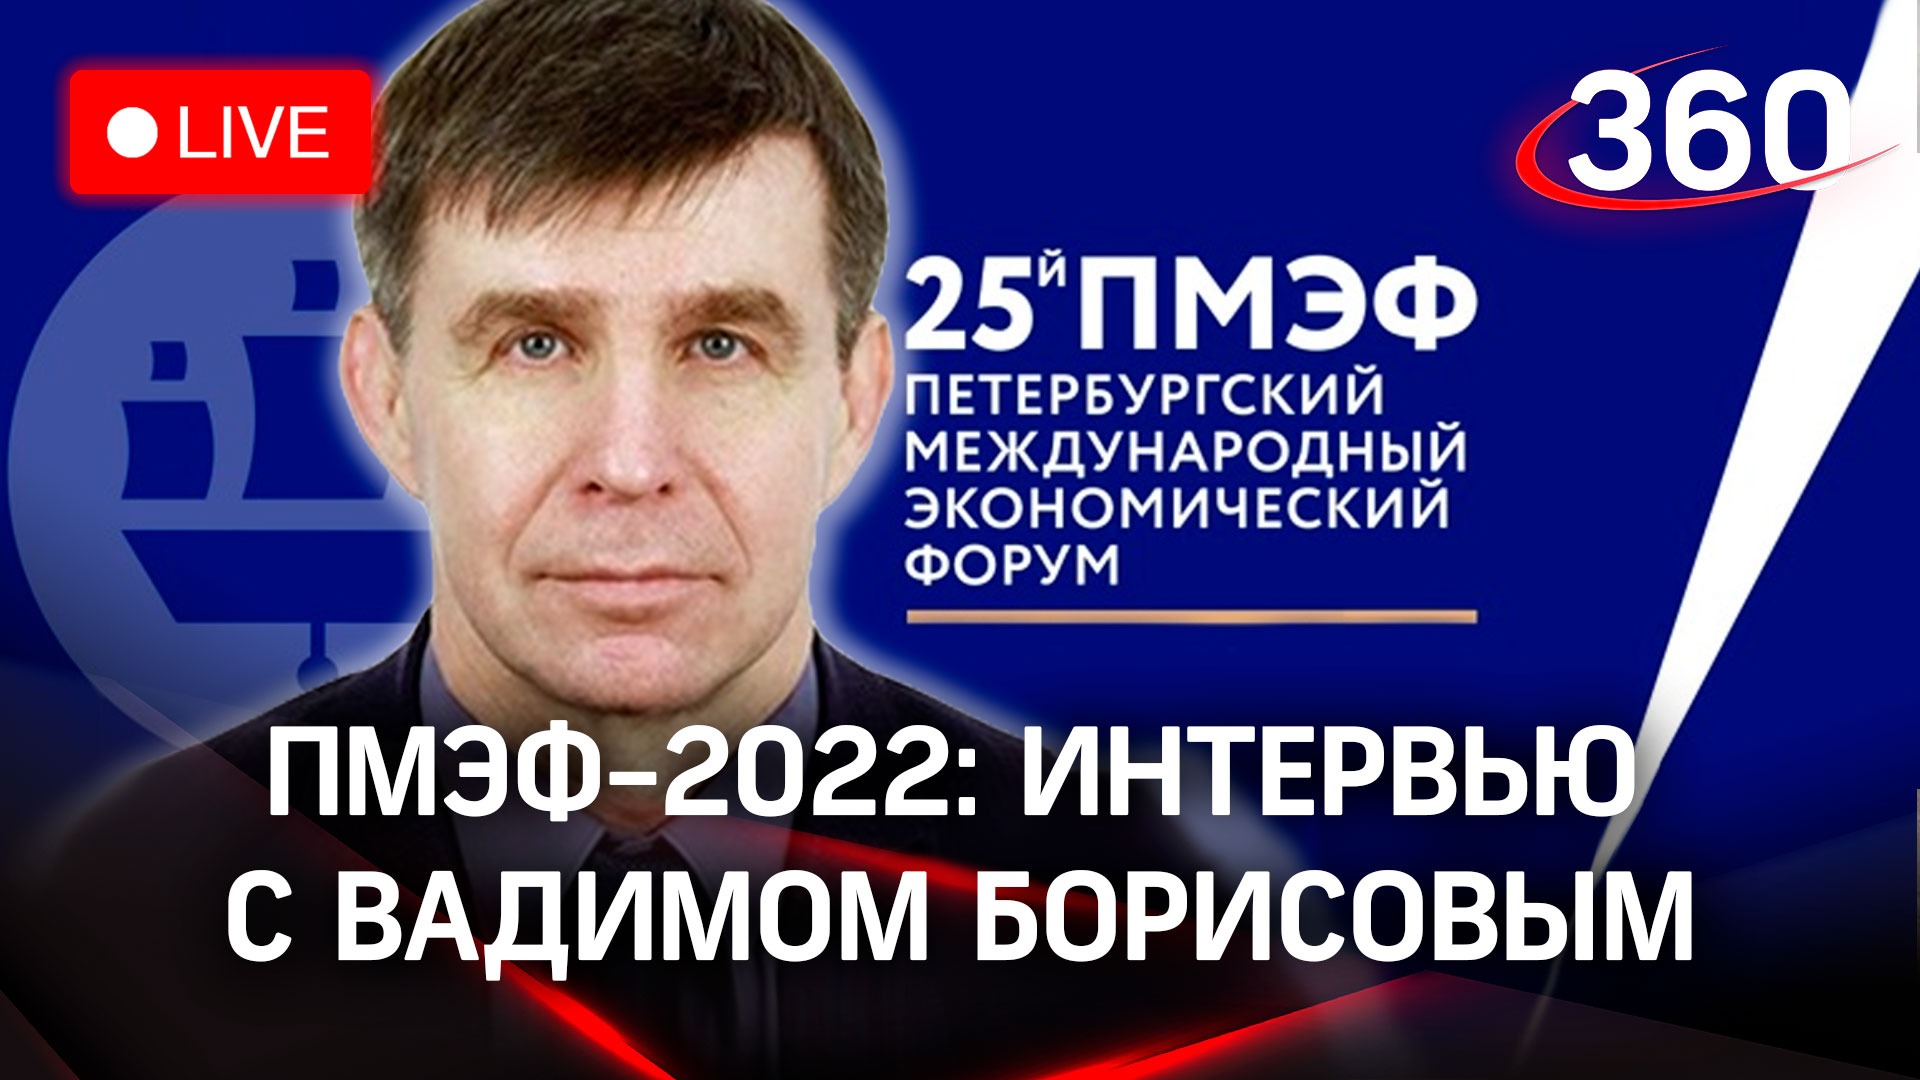 ПМЭФ-2022: интервью с Вадимом Борисовым, президентом Российской ассоциации искусственного интеллекта